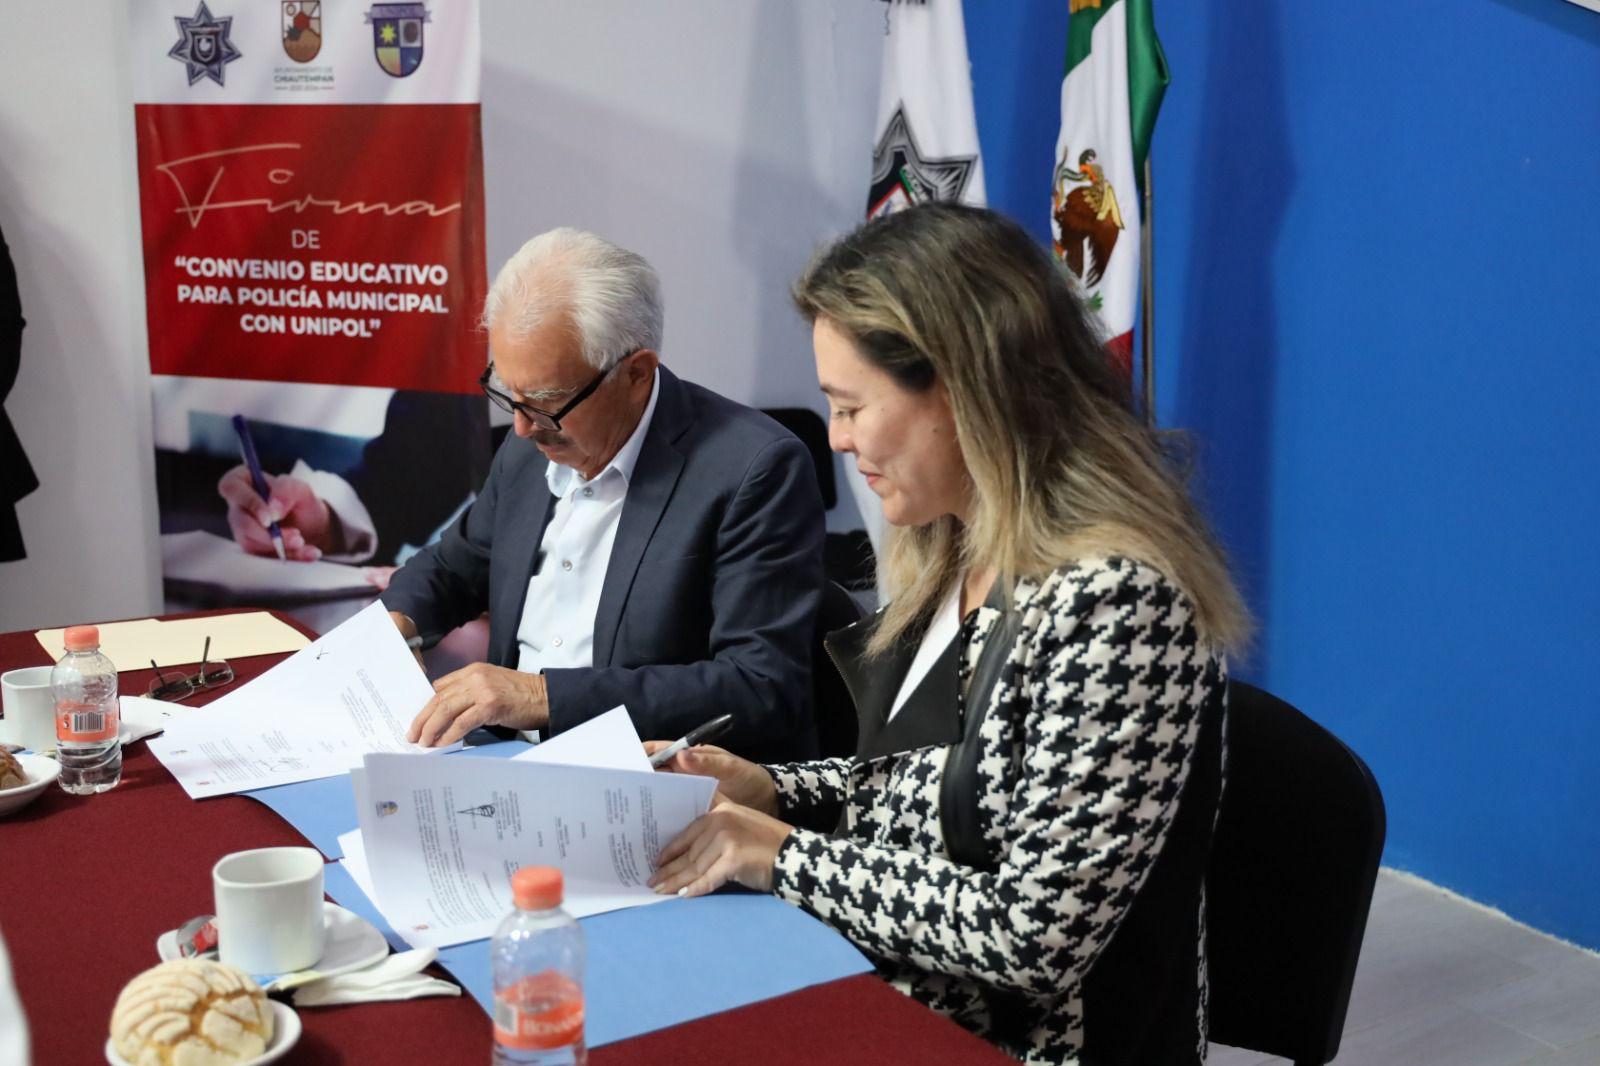 Signan convenio de colaboración Ayuntamiento de Chiautempan y Unipol